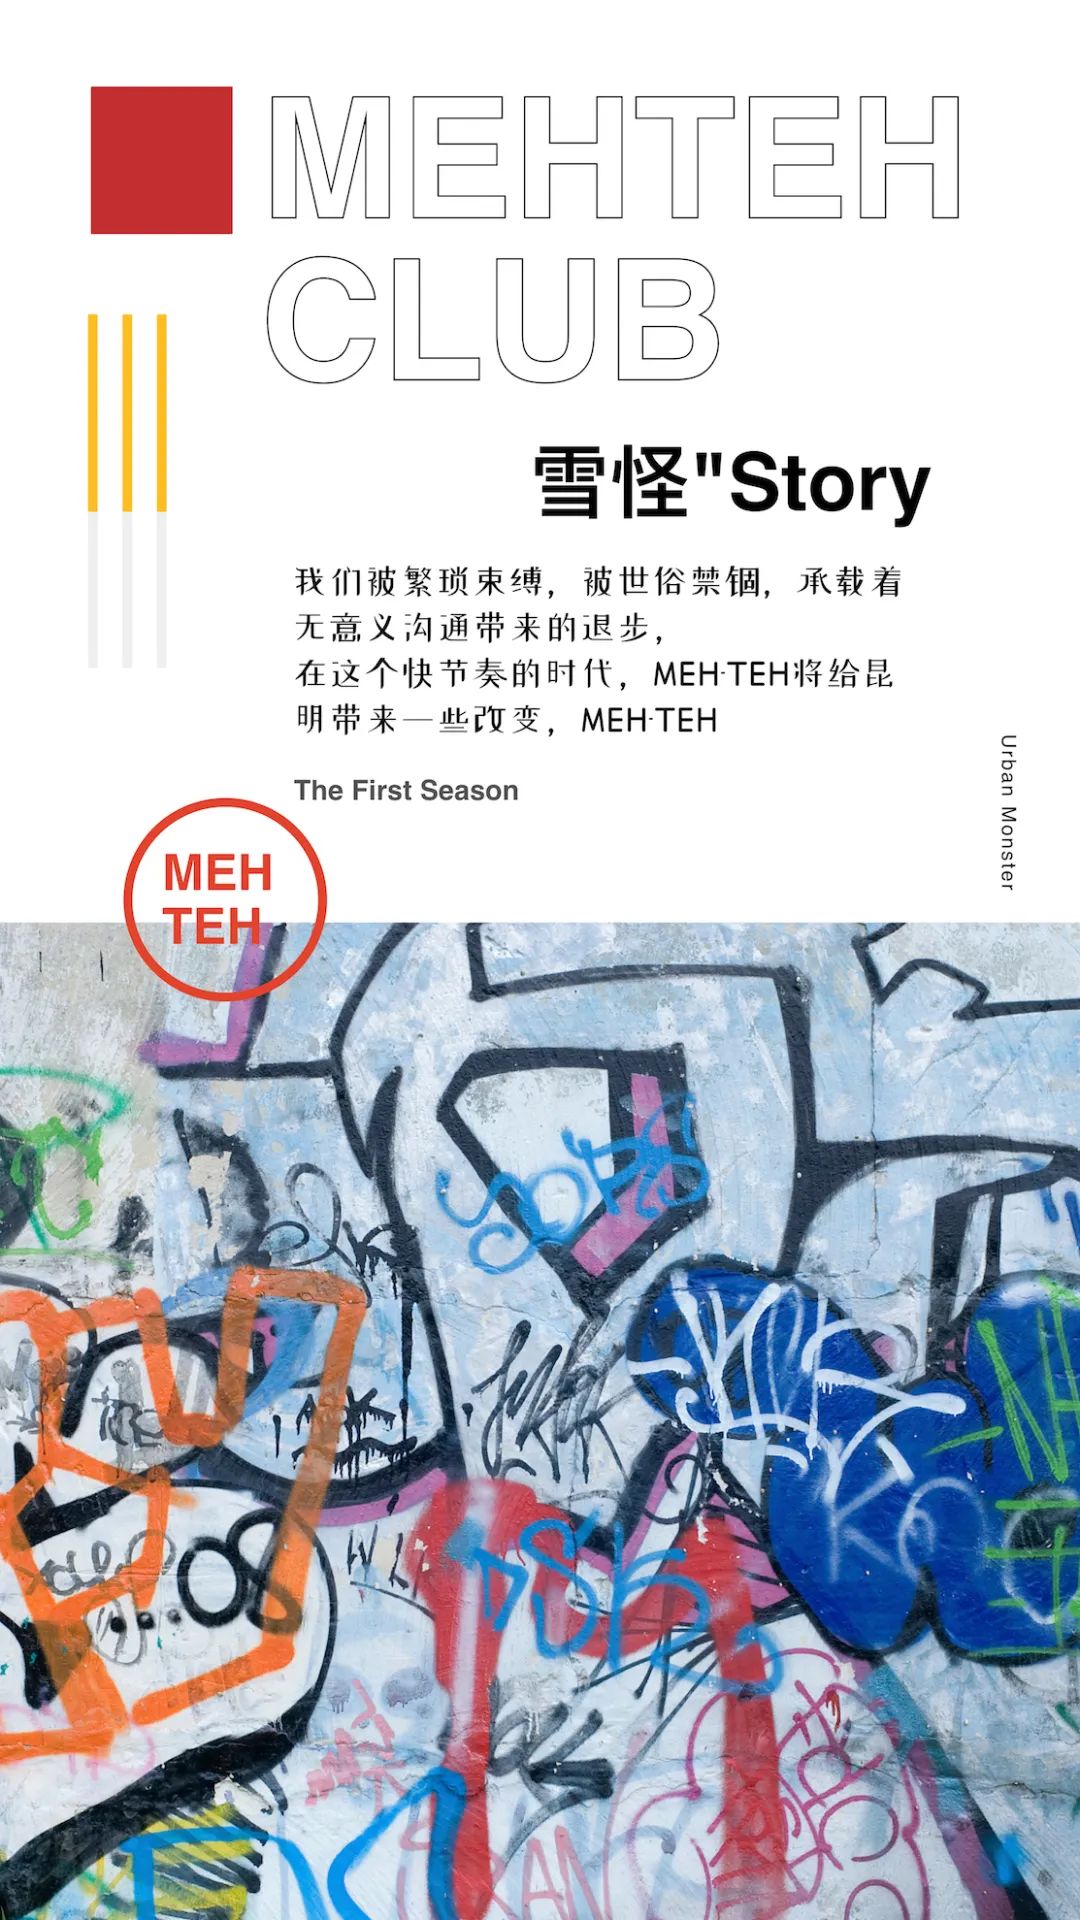 MEHTEH | 雪怪'故事Story-昆明MT酒吧/MEHTEH CLUB